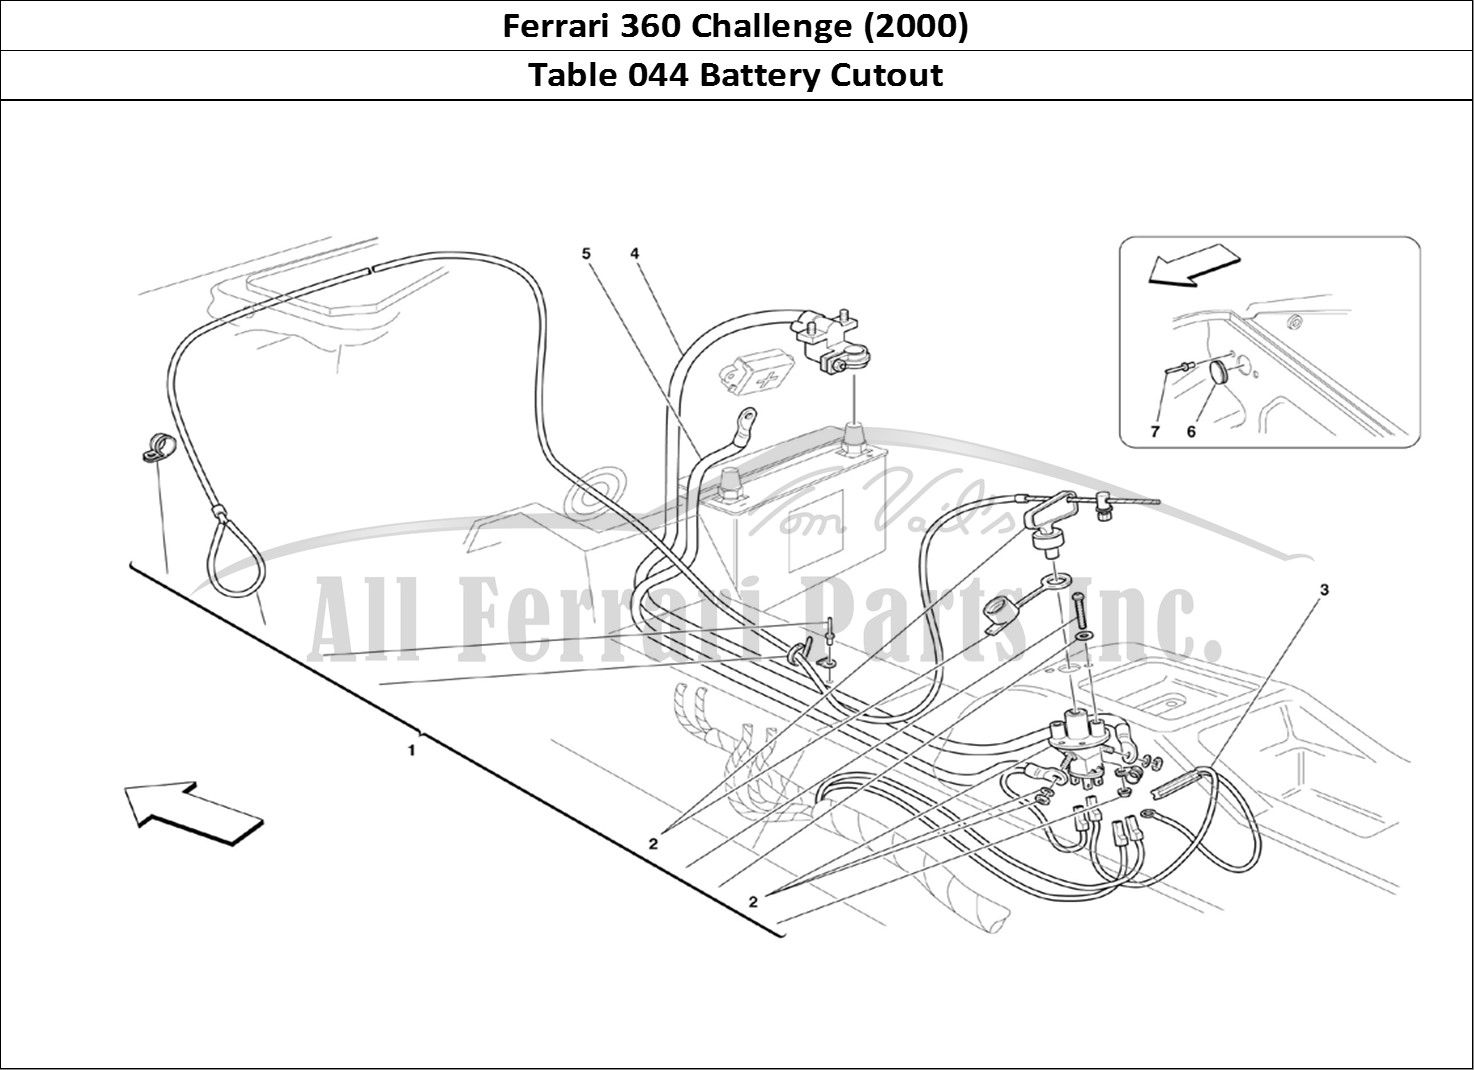 Ferrari Parts Ferrari 360 Challenge (2000) Page 044 Battery Cut-Out